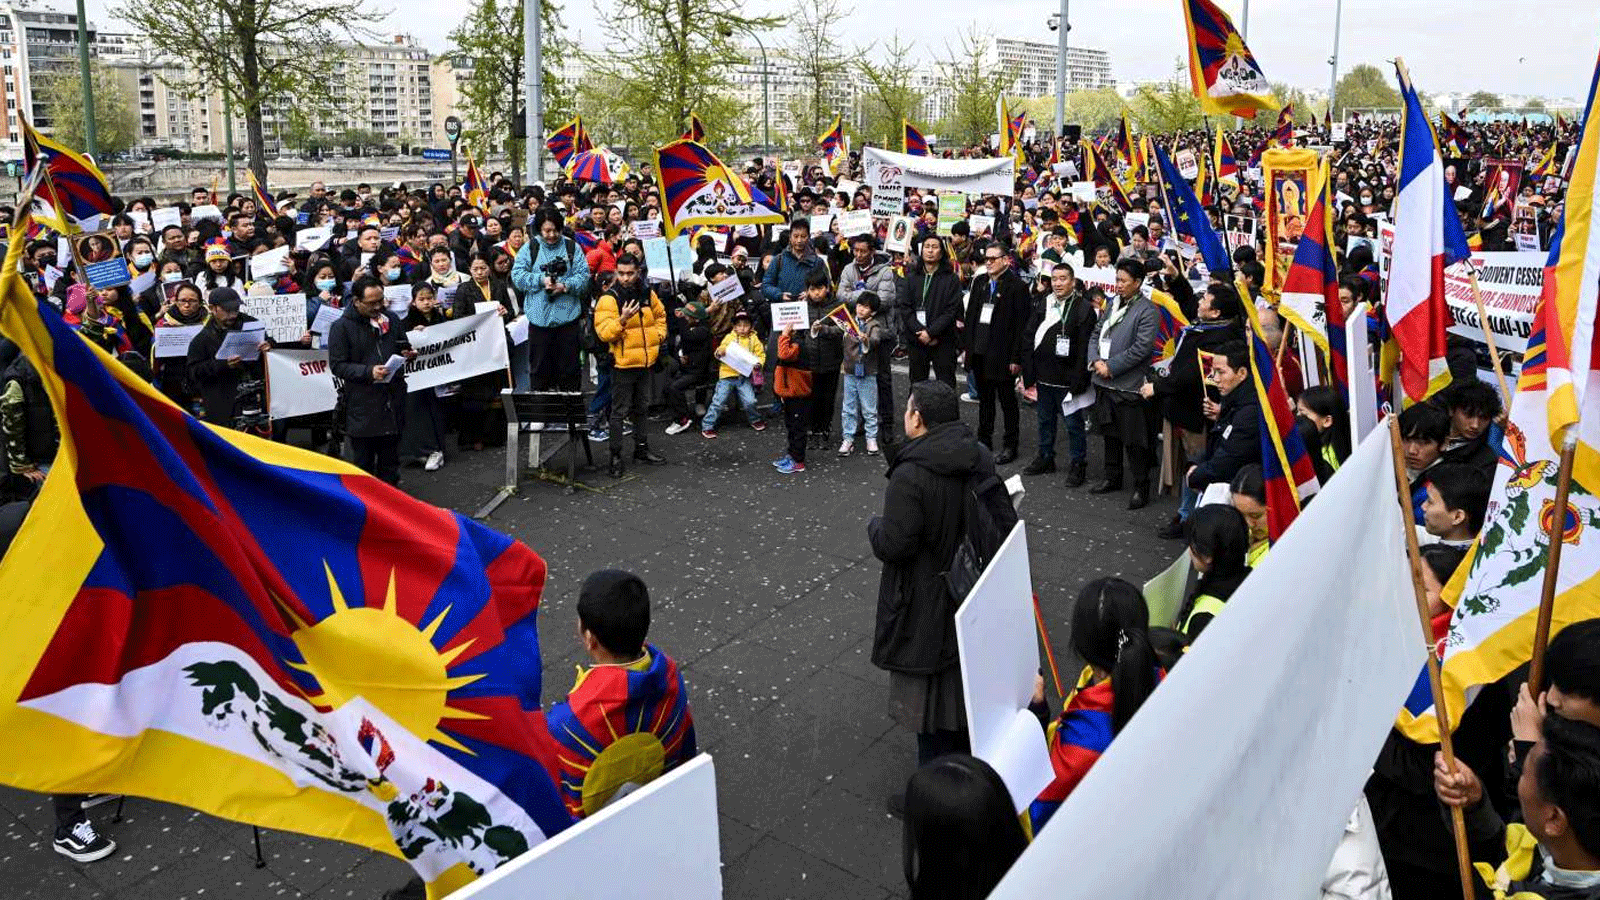 مئات التيبتيين يتظاهرون في باريس دعماً للدالاي لاما بعد فيديو مثير للجدل